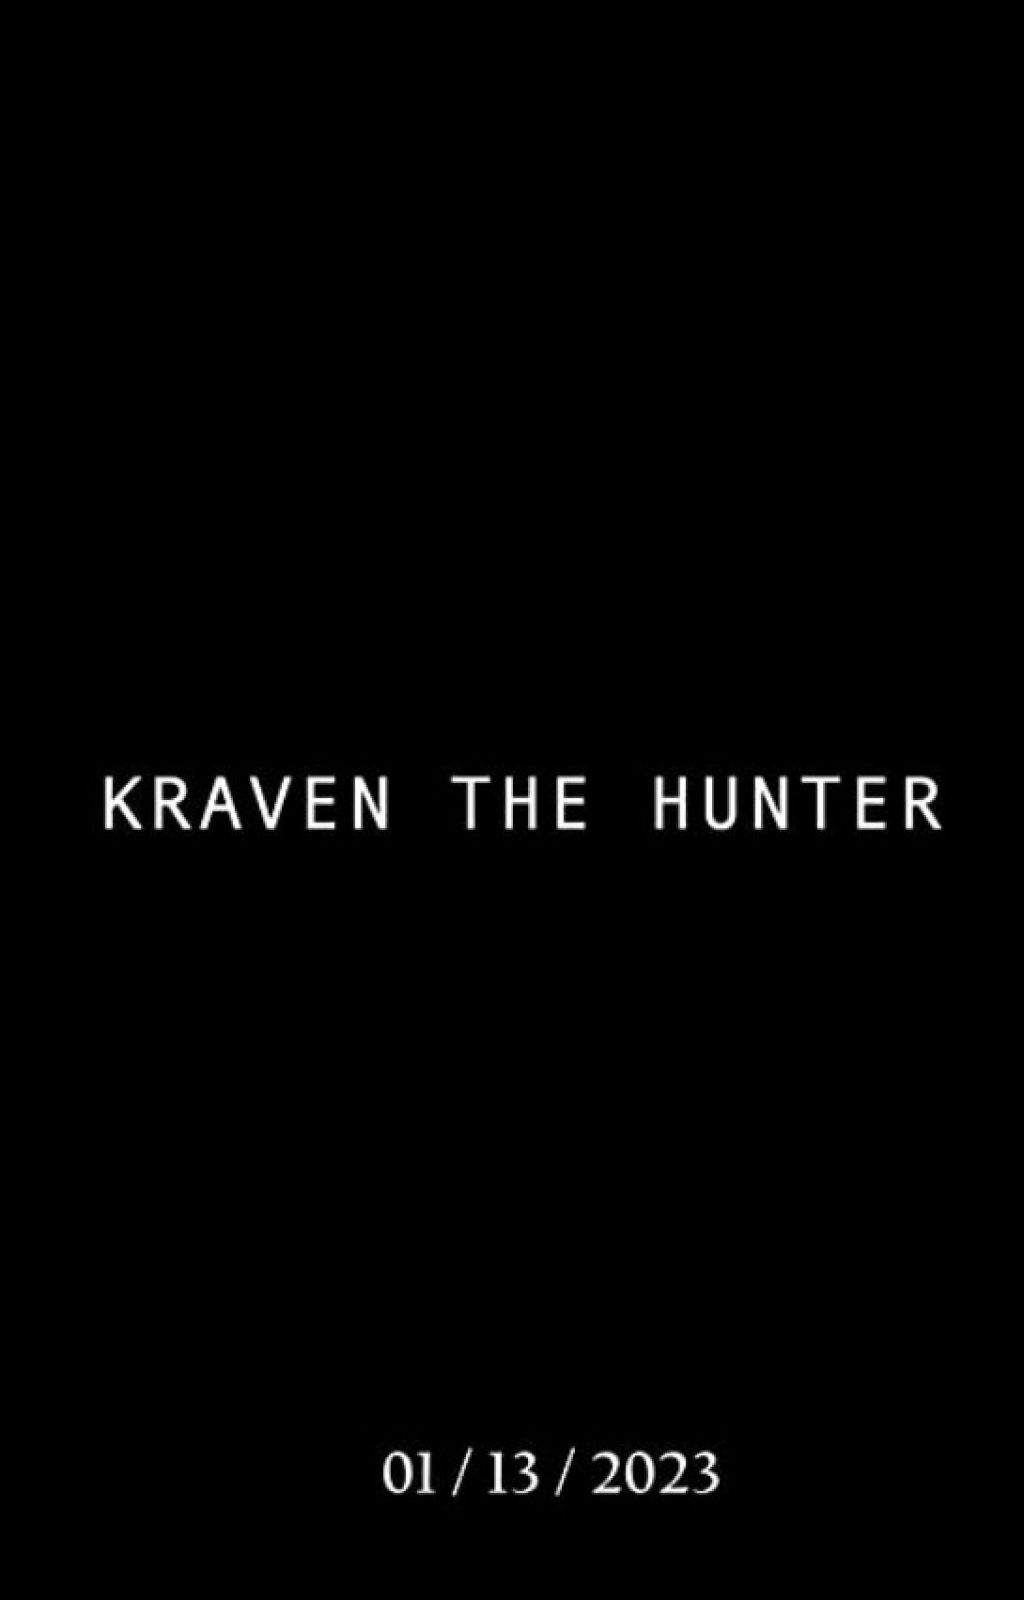 1. Kraven the Hunter (2023).jpg